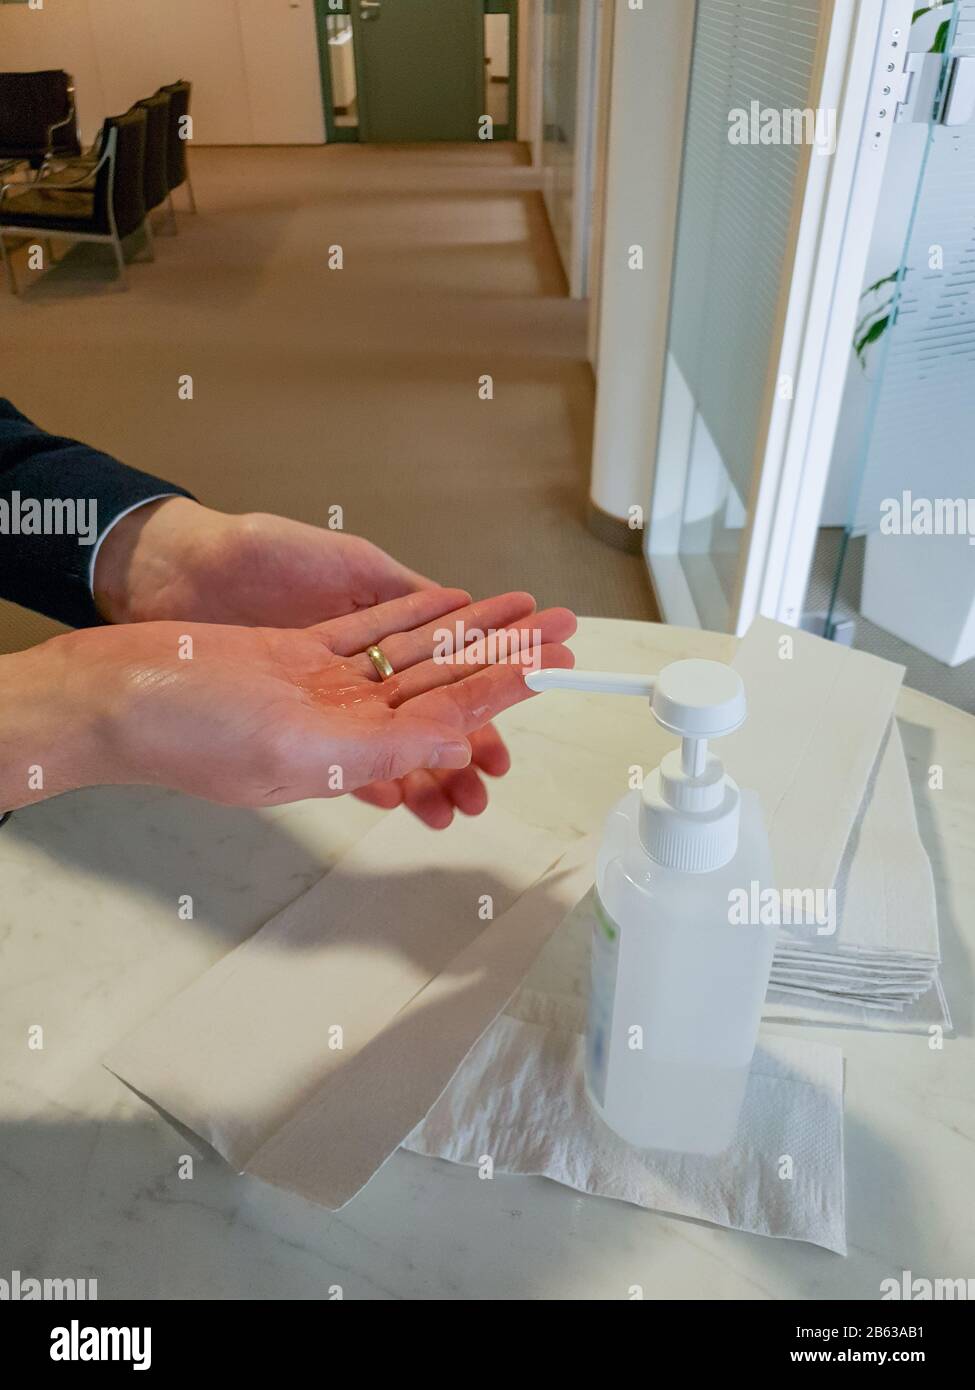 L'homme marié avec l'anneau doré sur le doigt se lave les mains avec du désinfectant pour éviter d'être infecté par le virus corona. Banque D'Images